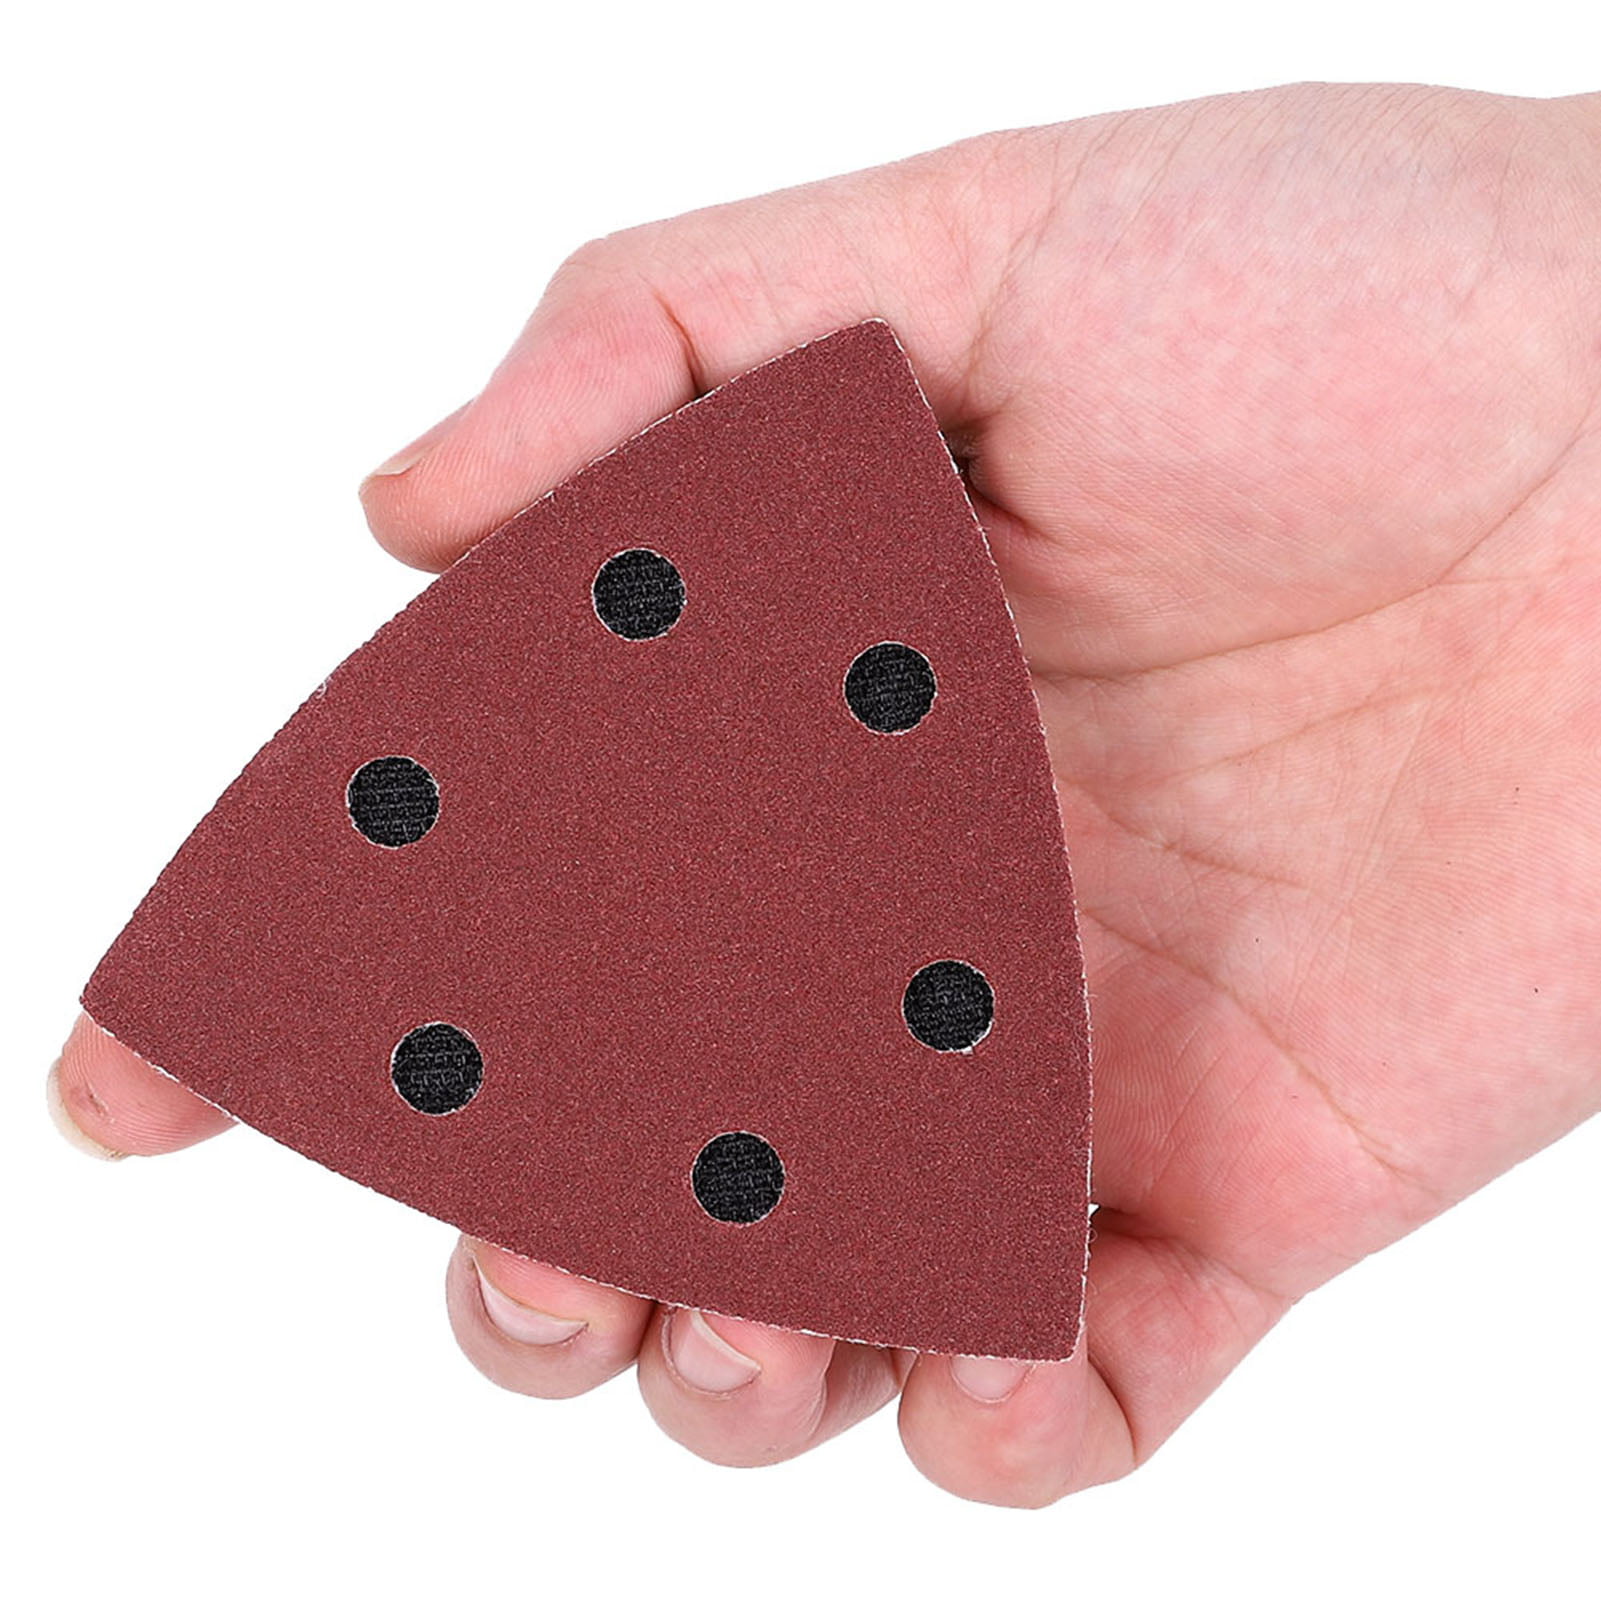 101x Sanding Sandpaper For Bosch Fein Oscillating Multi-Tool Cutting Cutter Pads 